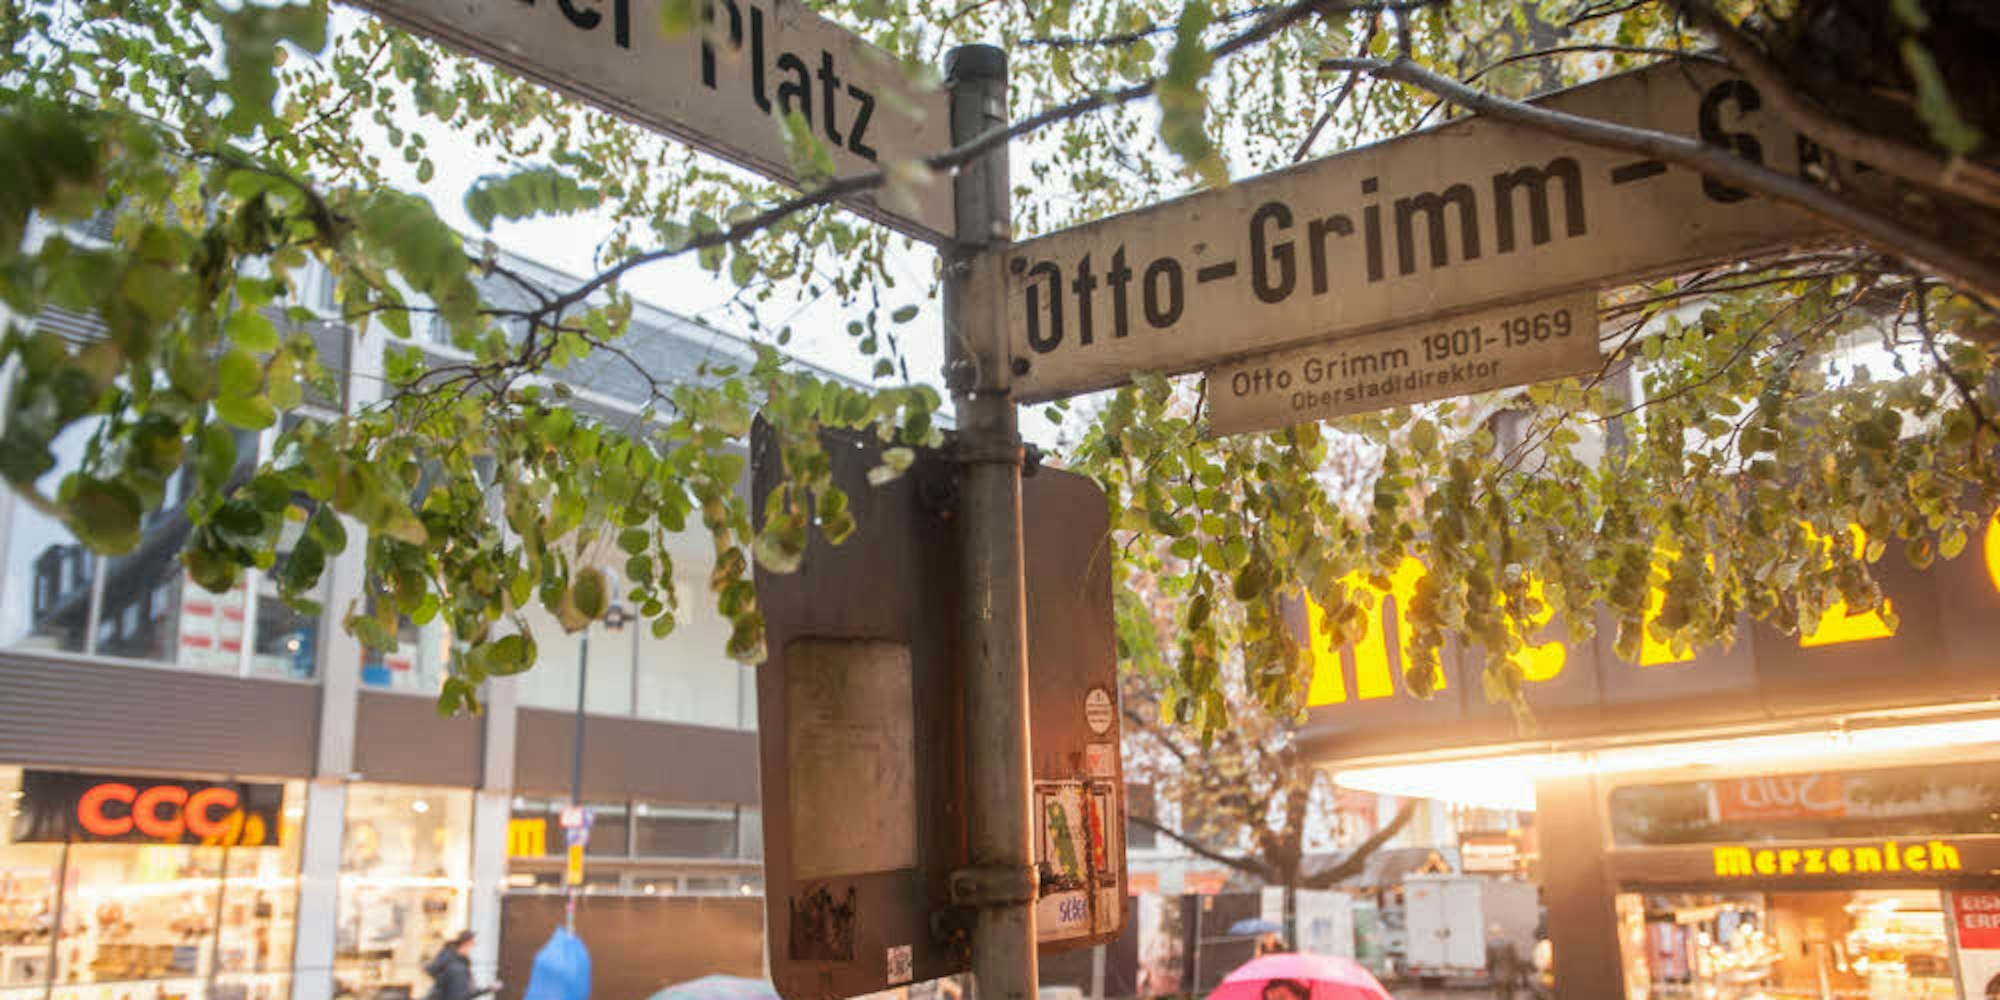 Die Otto-Grimm-Straße in Wiesdorf soll umbenannt werden. Das erfordert ein umfangreiches Anhörungsverfahren.